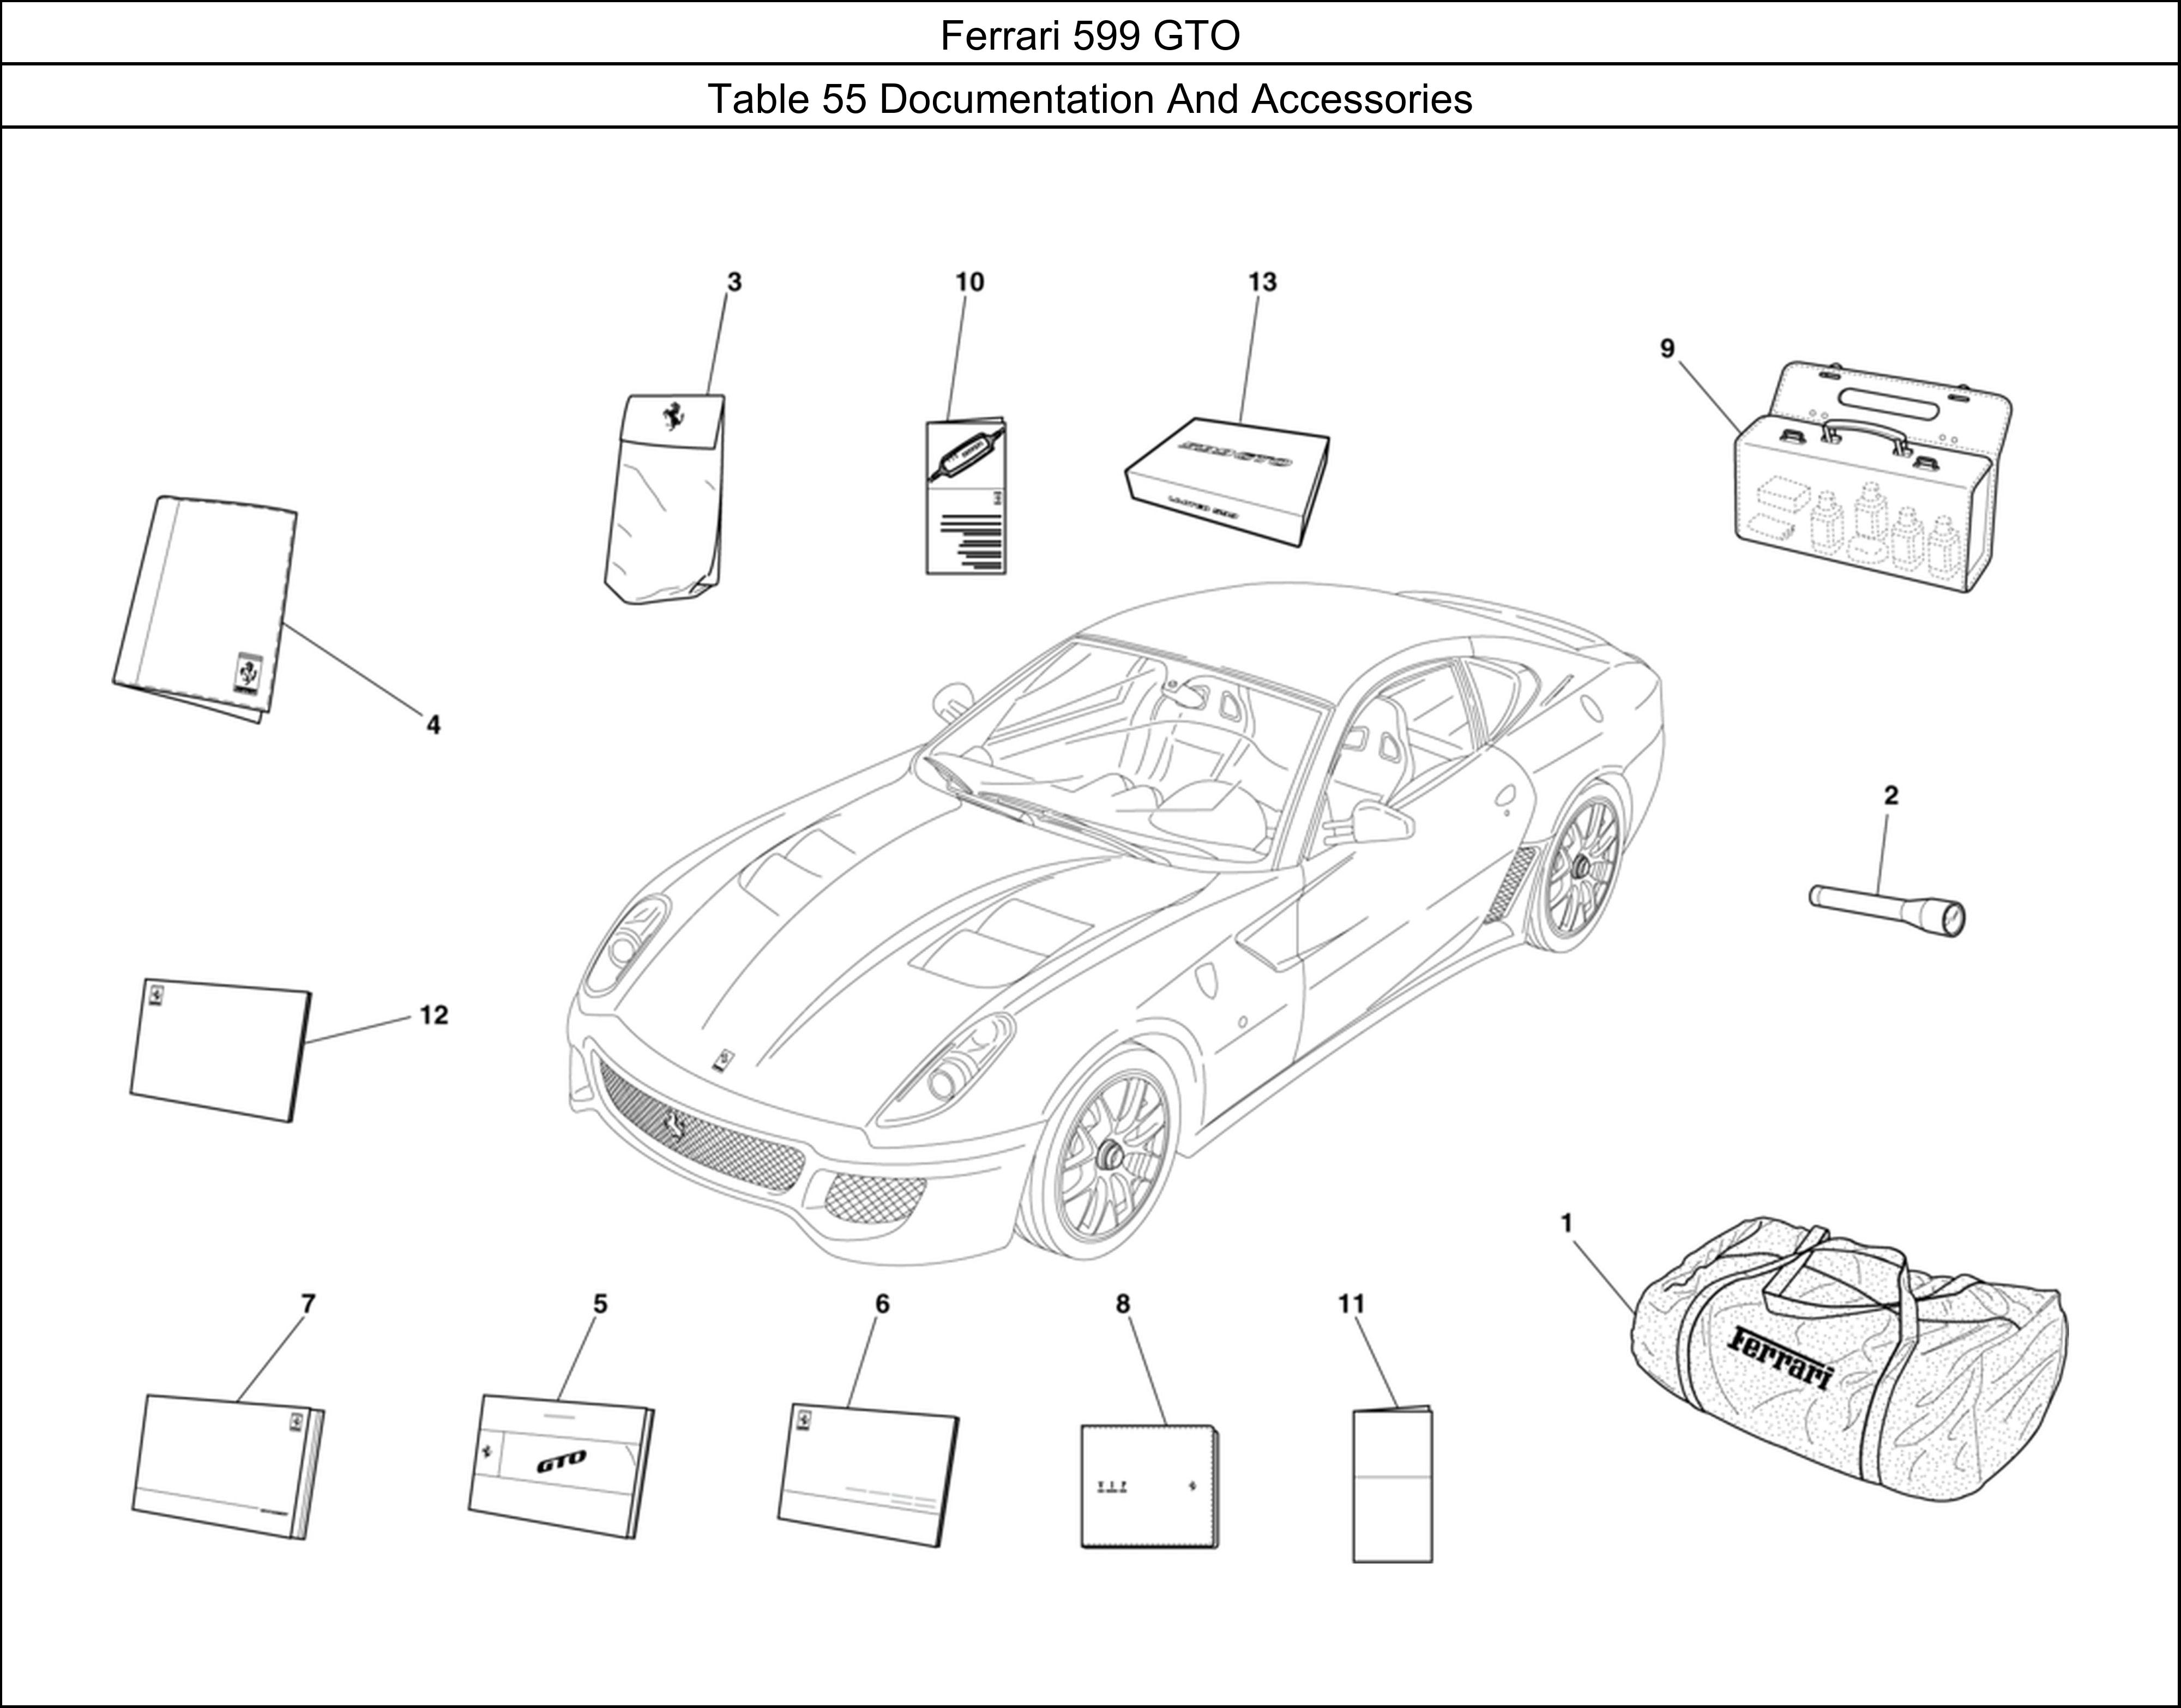 Ferrari Parts Ferrari 599 GTO Table 55 Documentation And Accessories